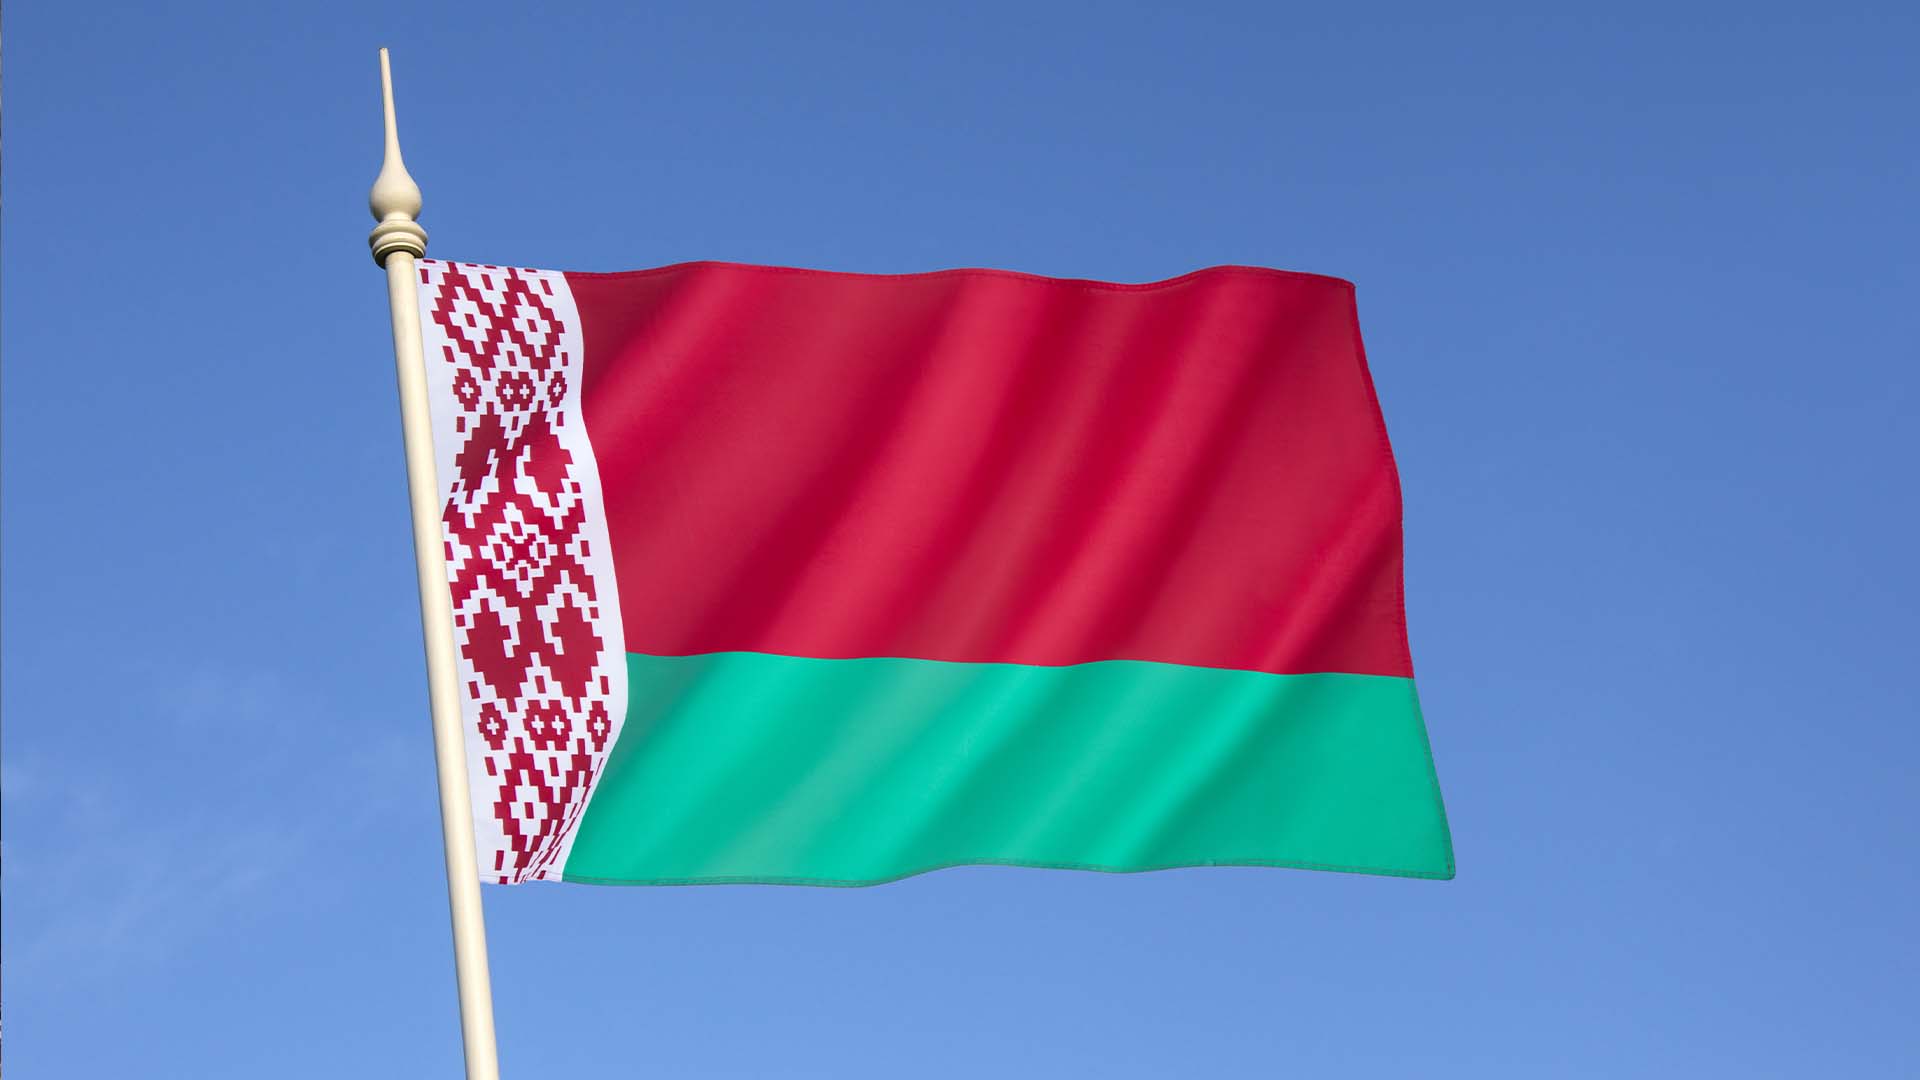 Biélorussie ou Bélarus? Ça dépend à qui vous posez la question.